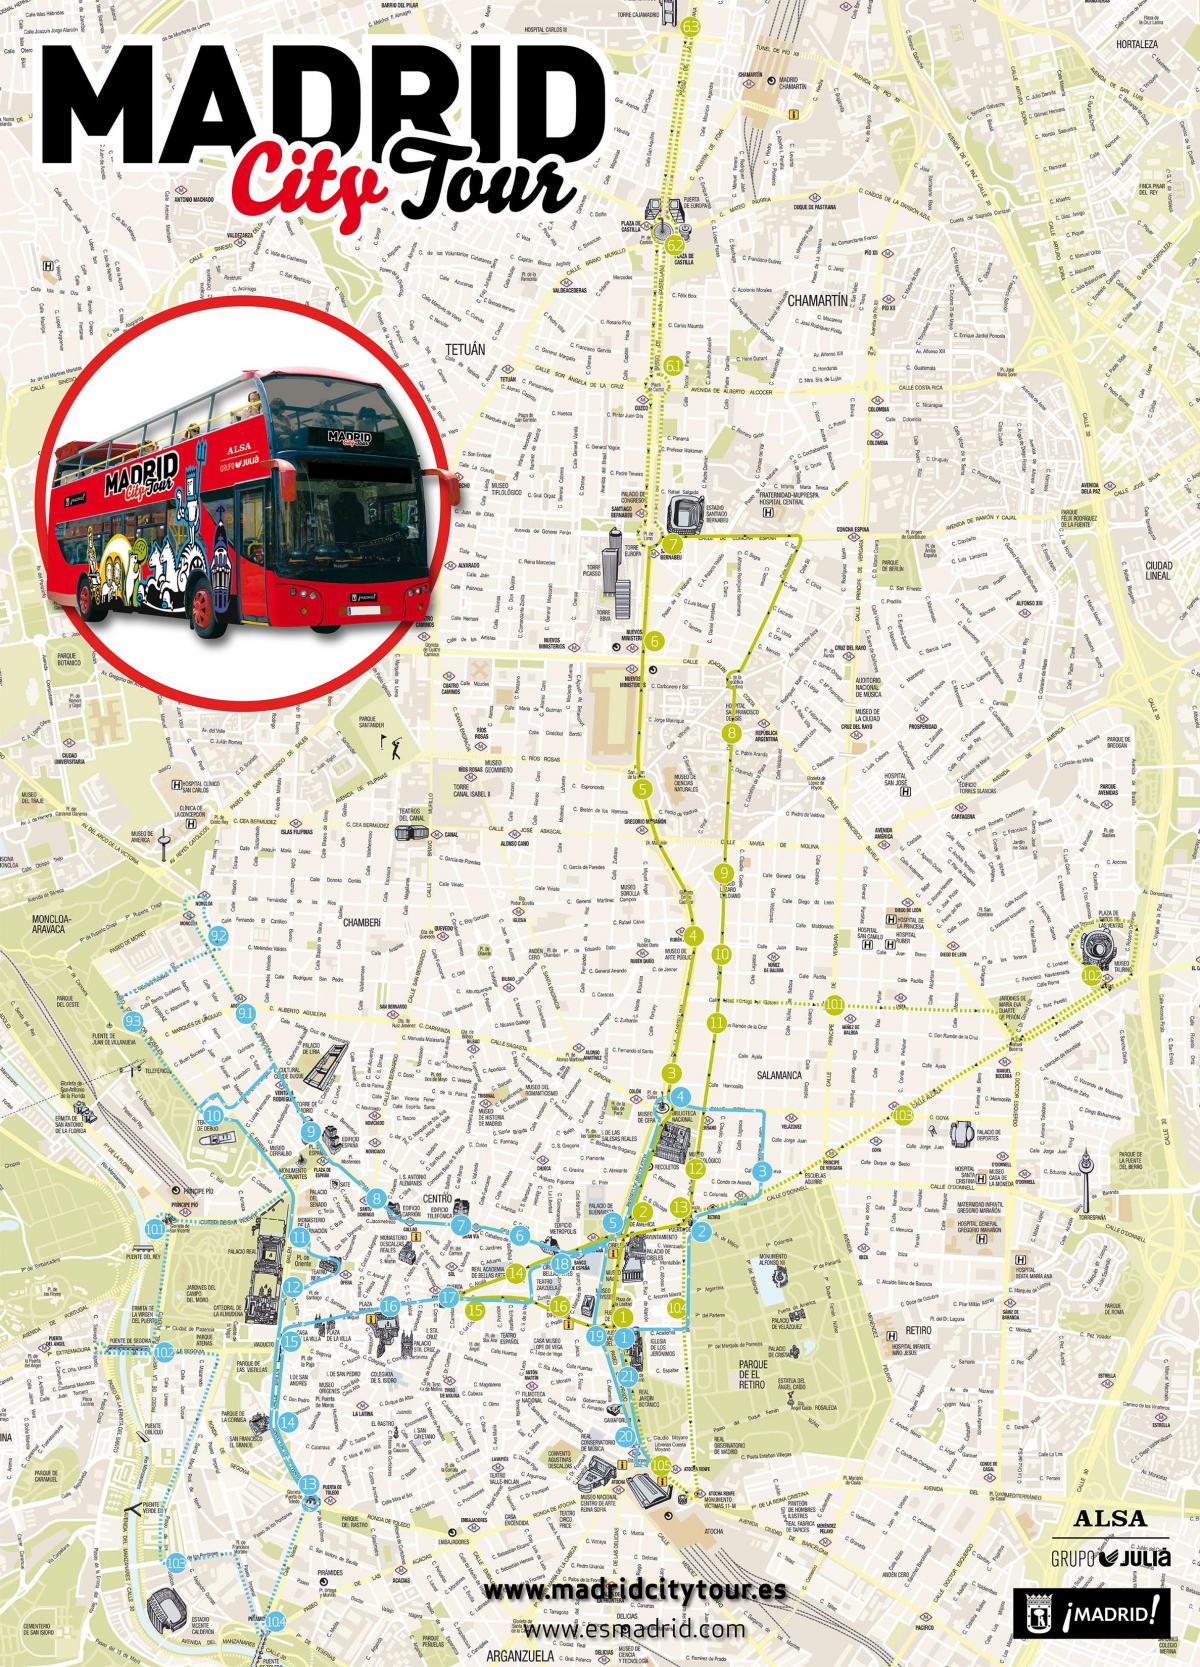 Madrid sightseeing bus mapa